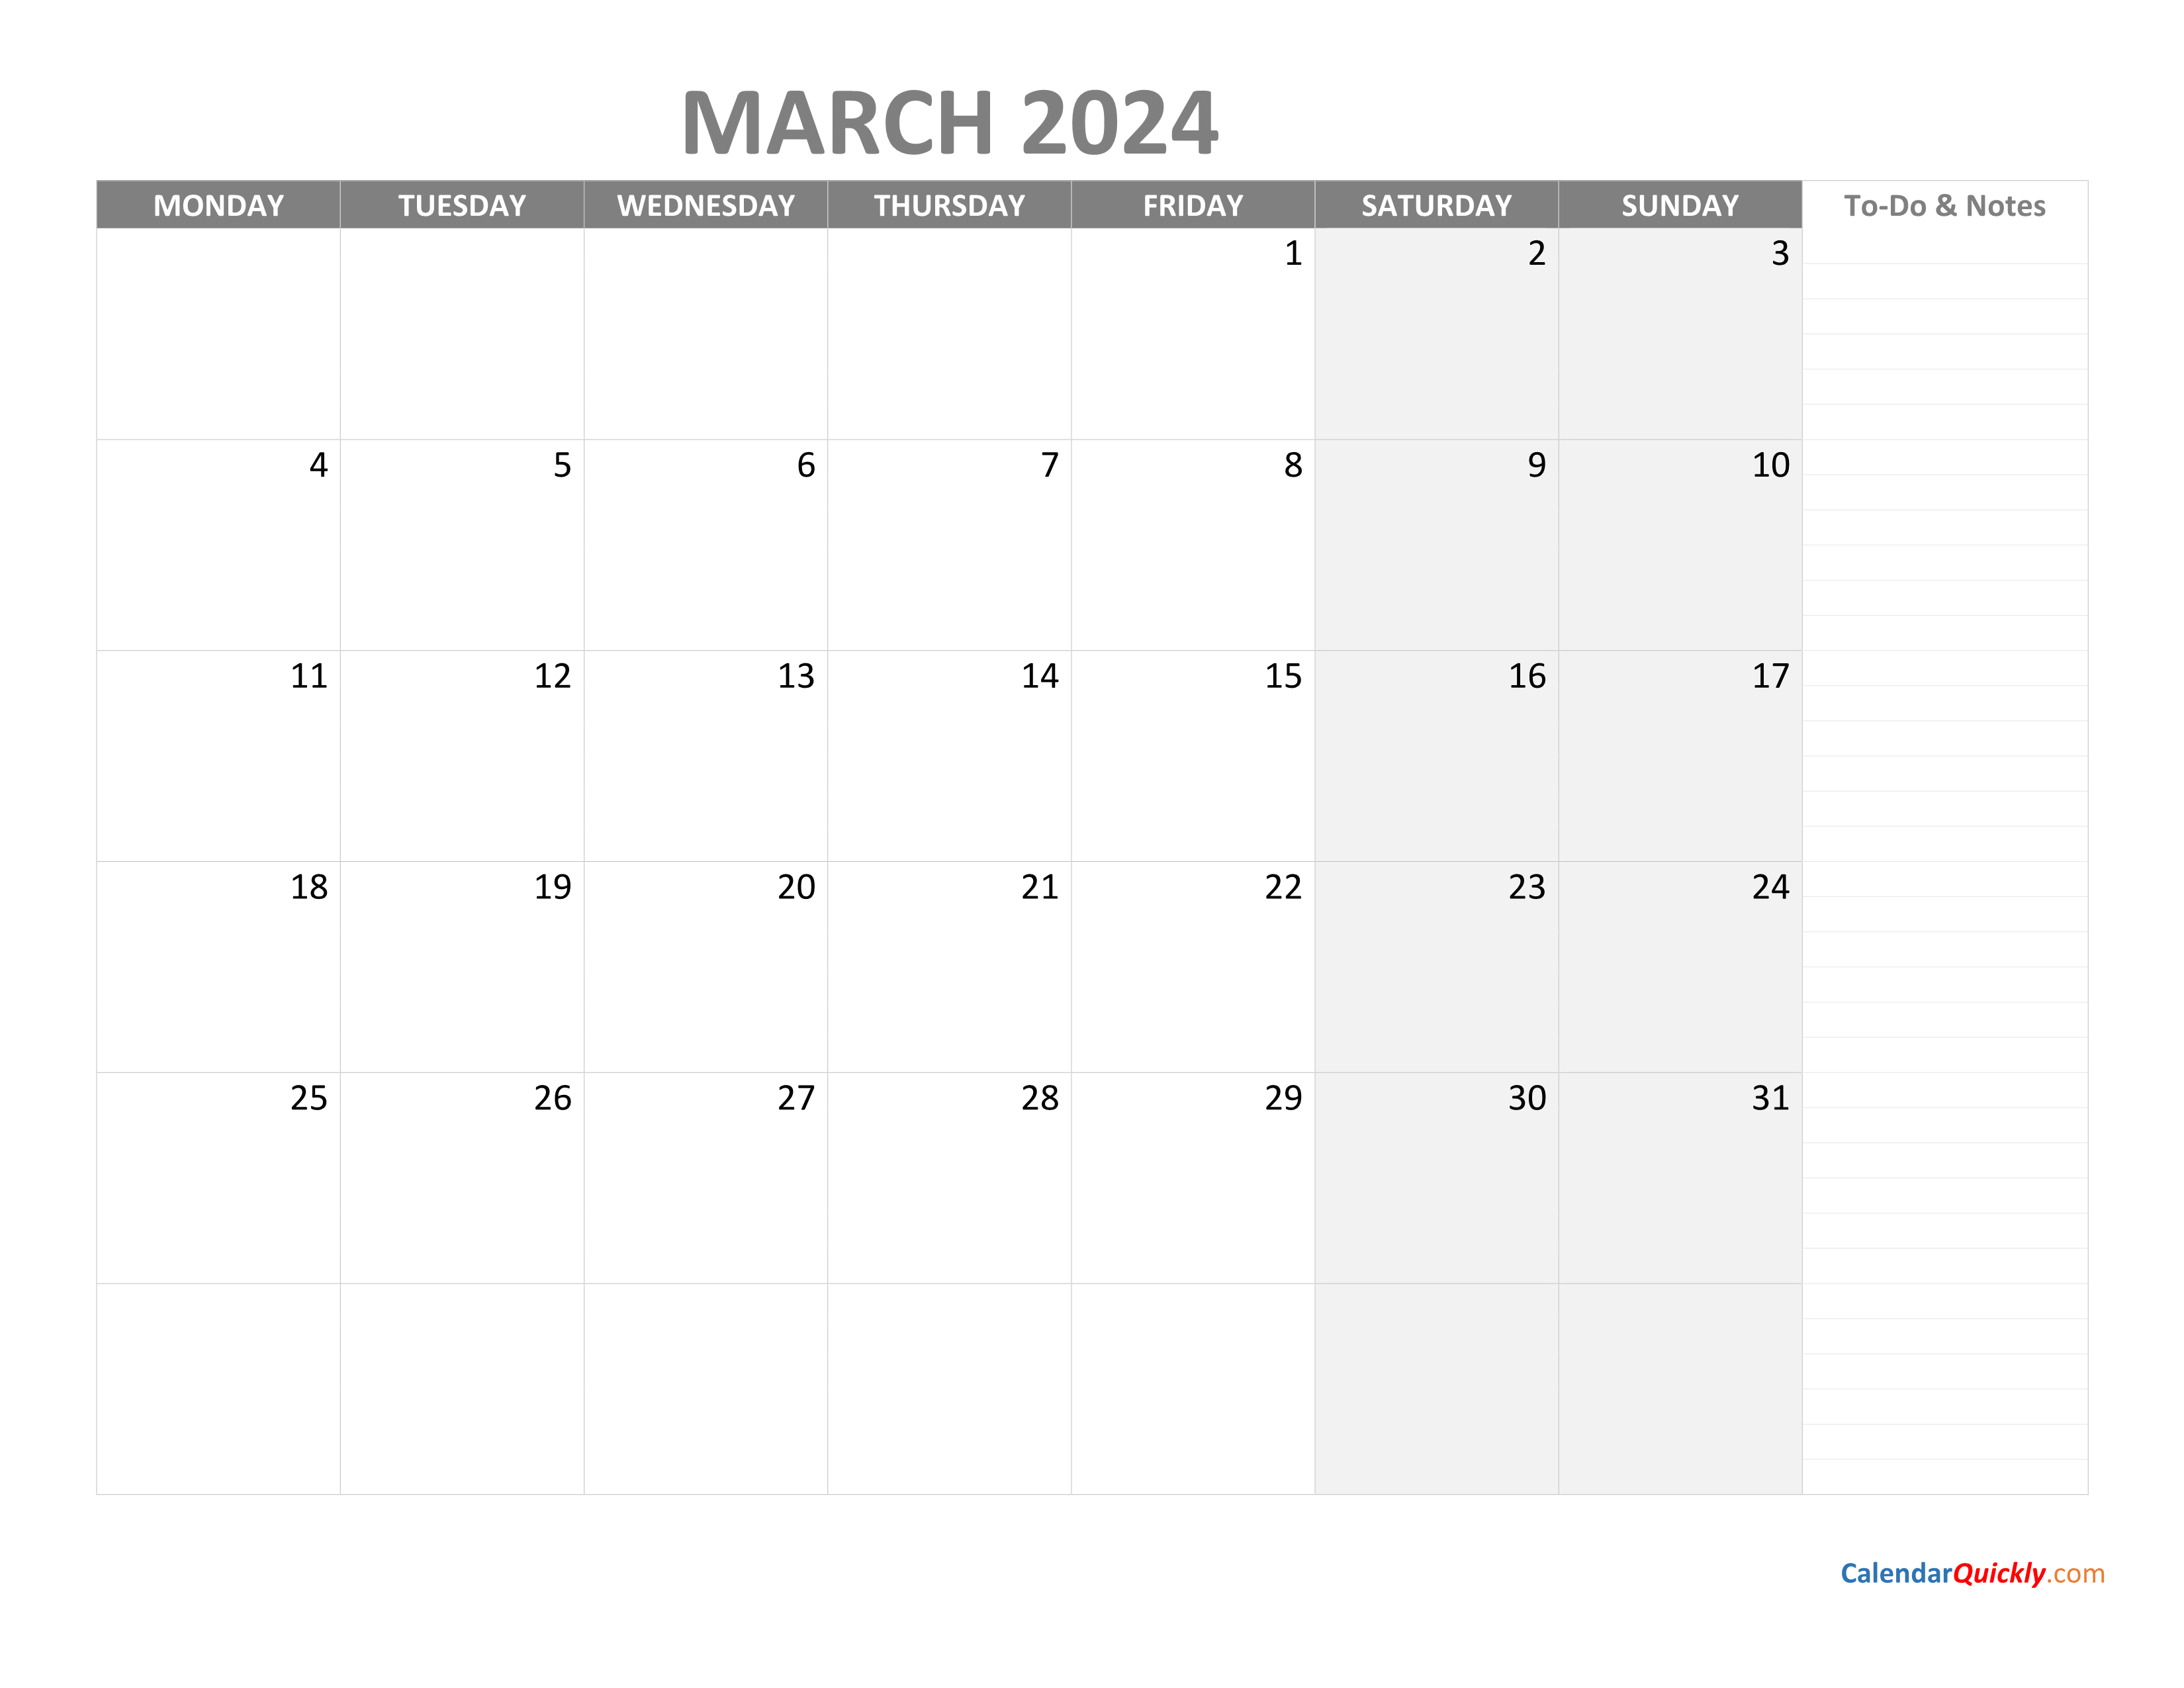 March Monday Calendar 2024 with Notes Calendar Quickly